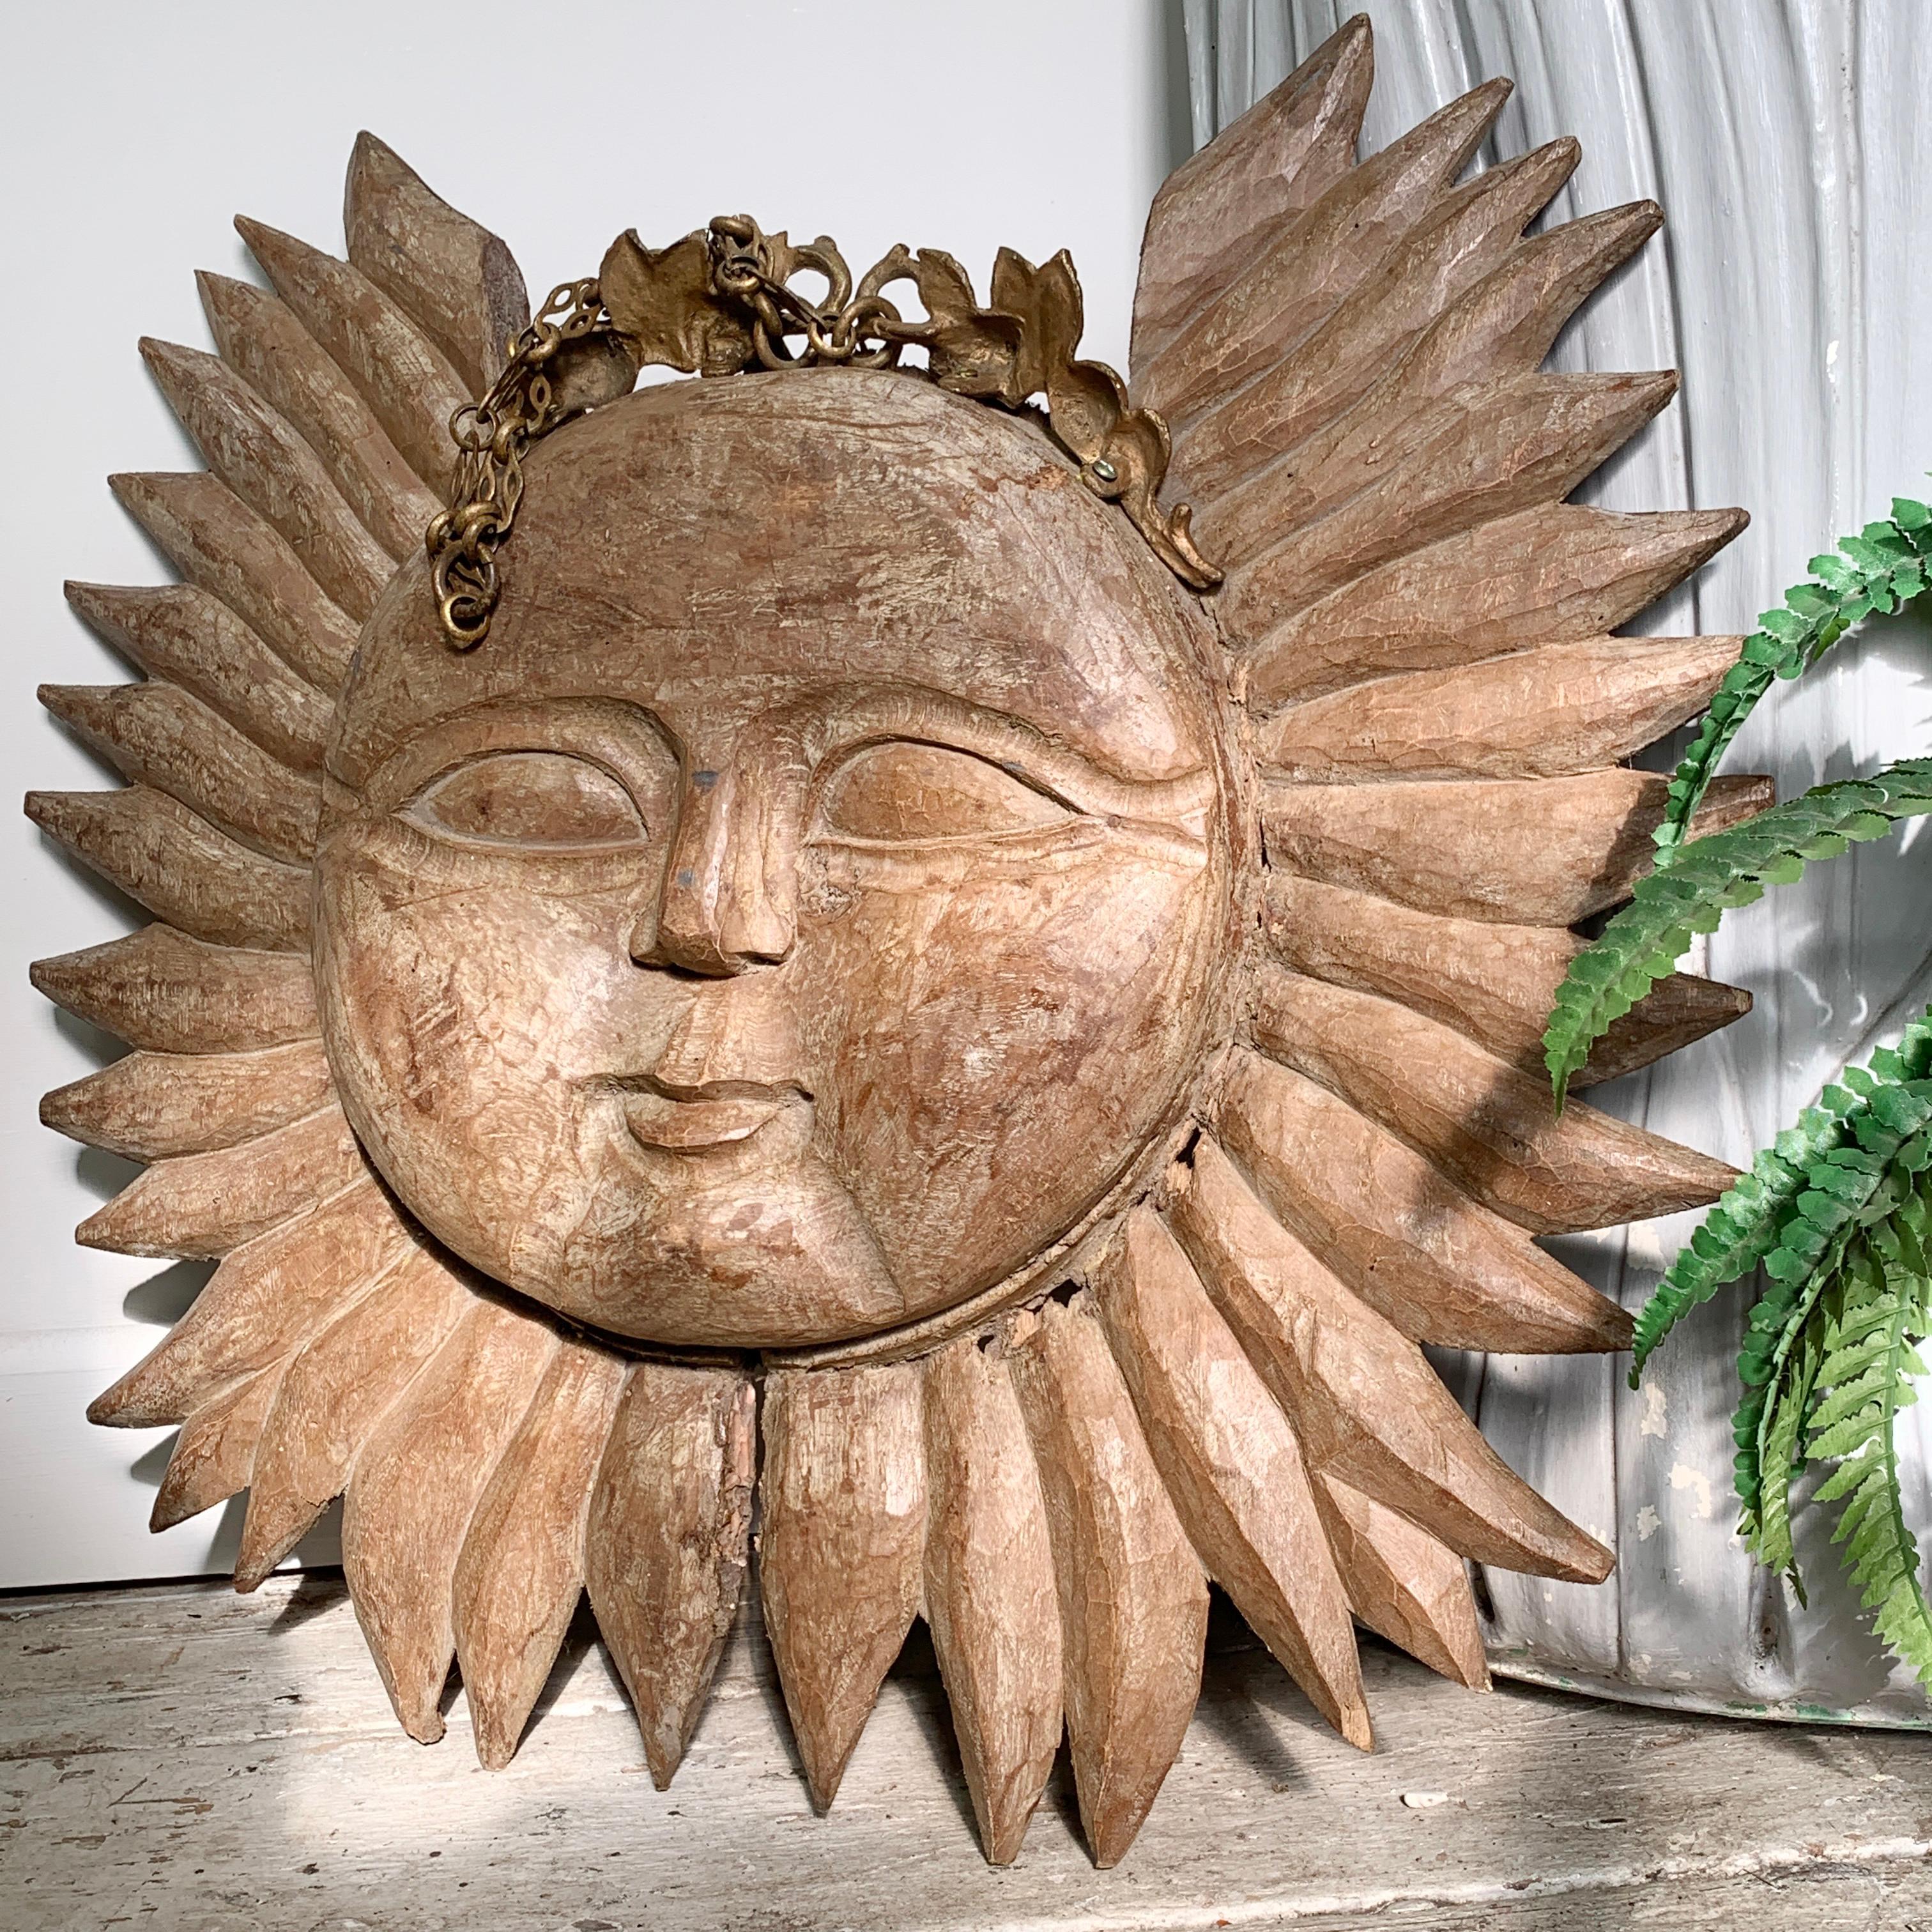 Ein absolut fesselndes, tief geschnitztes, doppelseitiges Sonnenschild aus Holz, das wahrscheinlich aus dem frühen 19. Jahrhundert stammt. Dieses Stück hat einen Großteil seines Lebens im Freien verbracht, wahrscheinlich als Kneipenschild, wo es